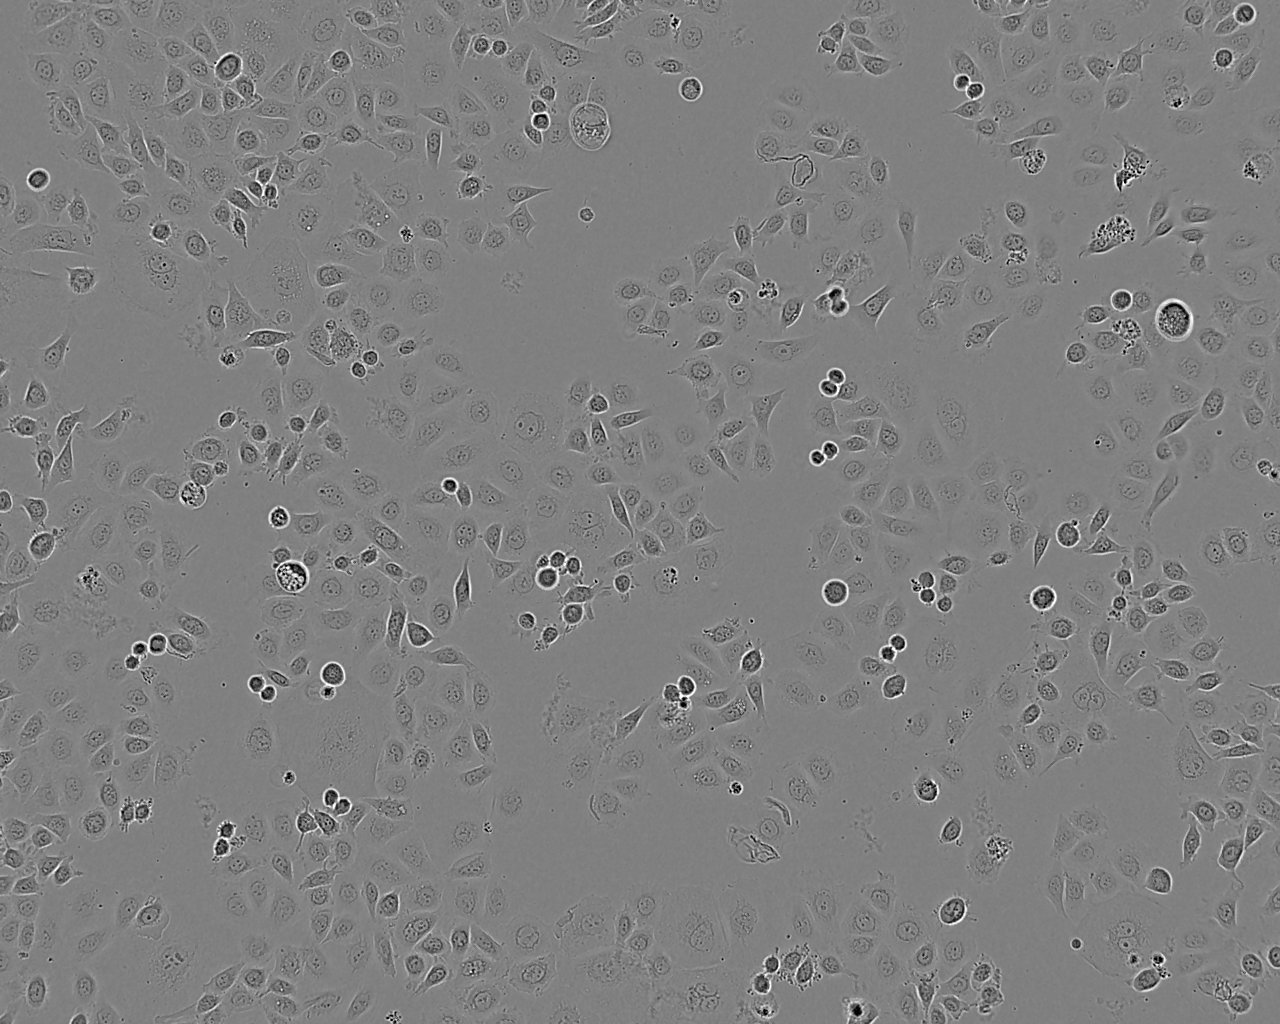 KYSE-30 epithelioid cells人食道癌细胞系,KYSE-30 epithelioid cells